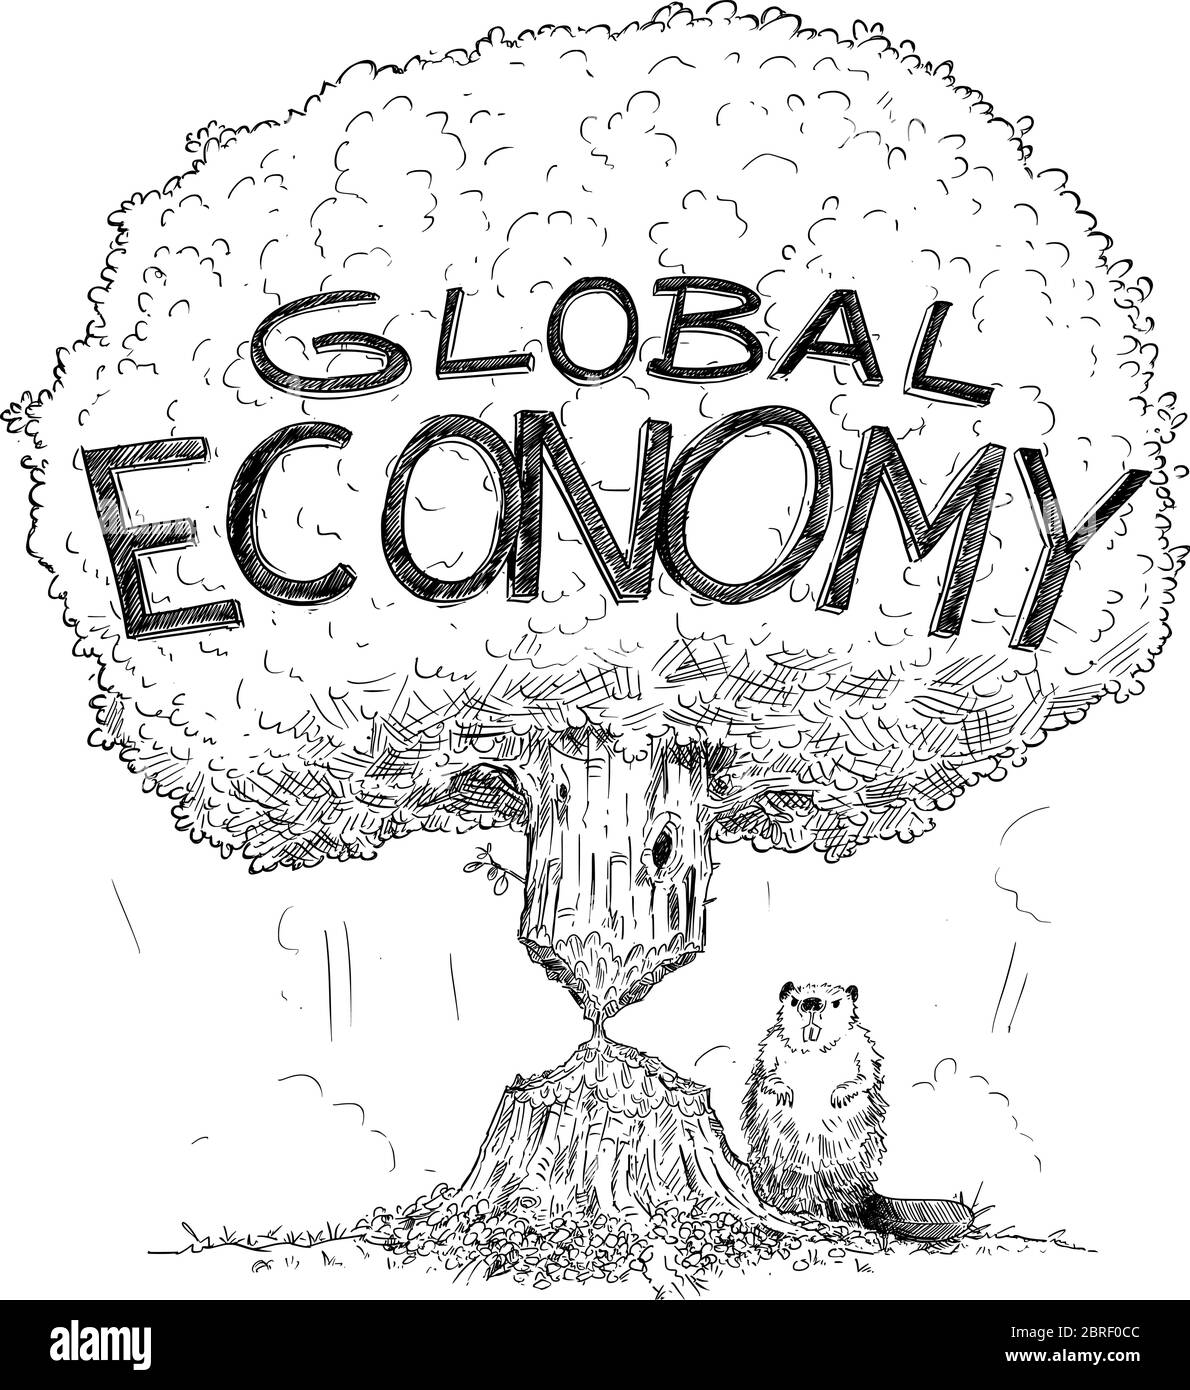 Disegno vettoriale cartoon illustrazione concettuale di albero che rappresenta l'economia globale indebolita dalla crisi come castore. Concetto di crisi finanziaria, debito o coronavirus nel mondo. Illustrazione Vettoriale